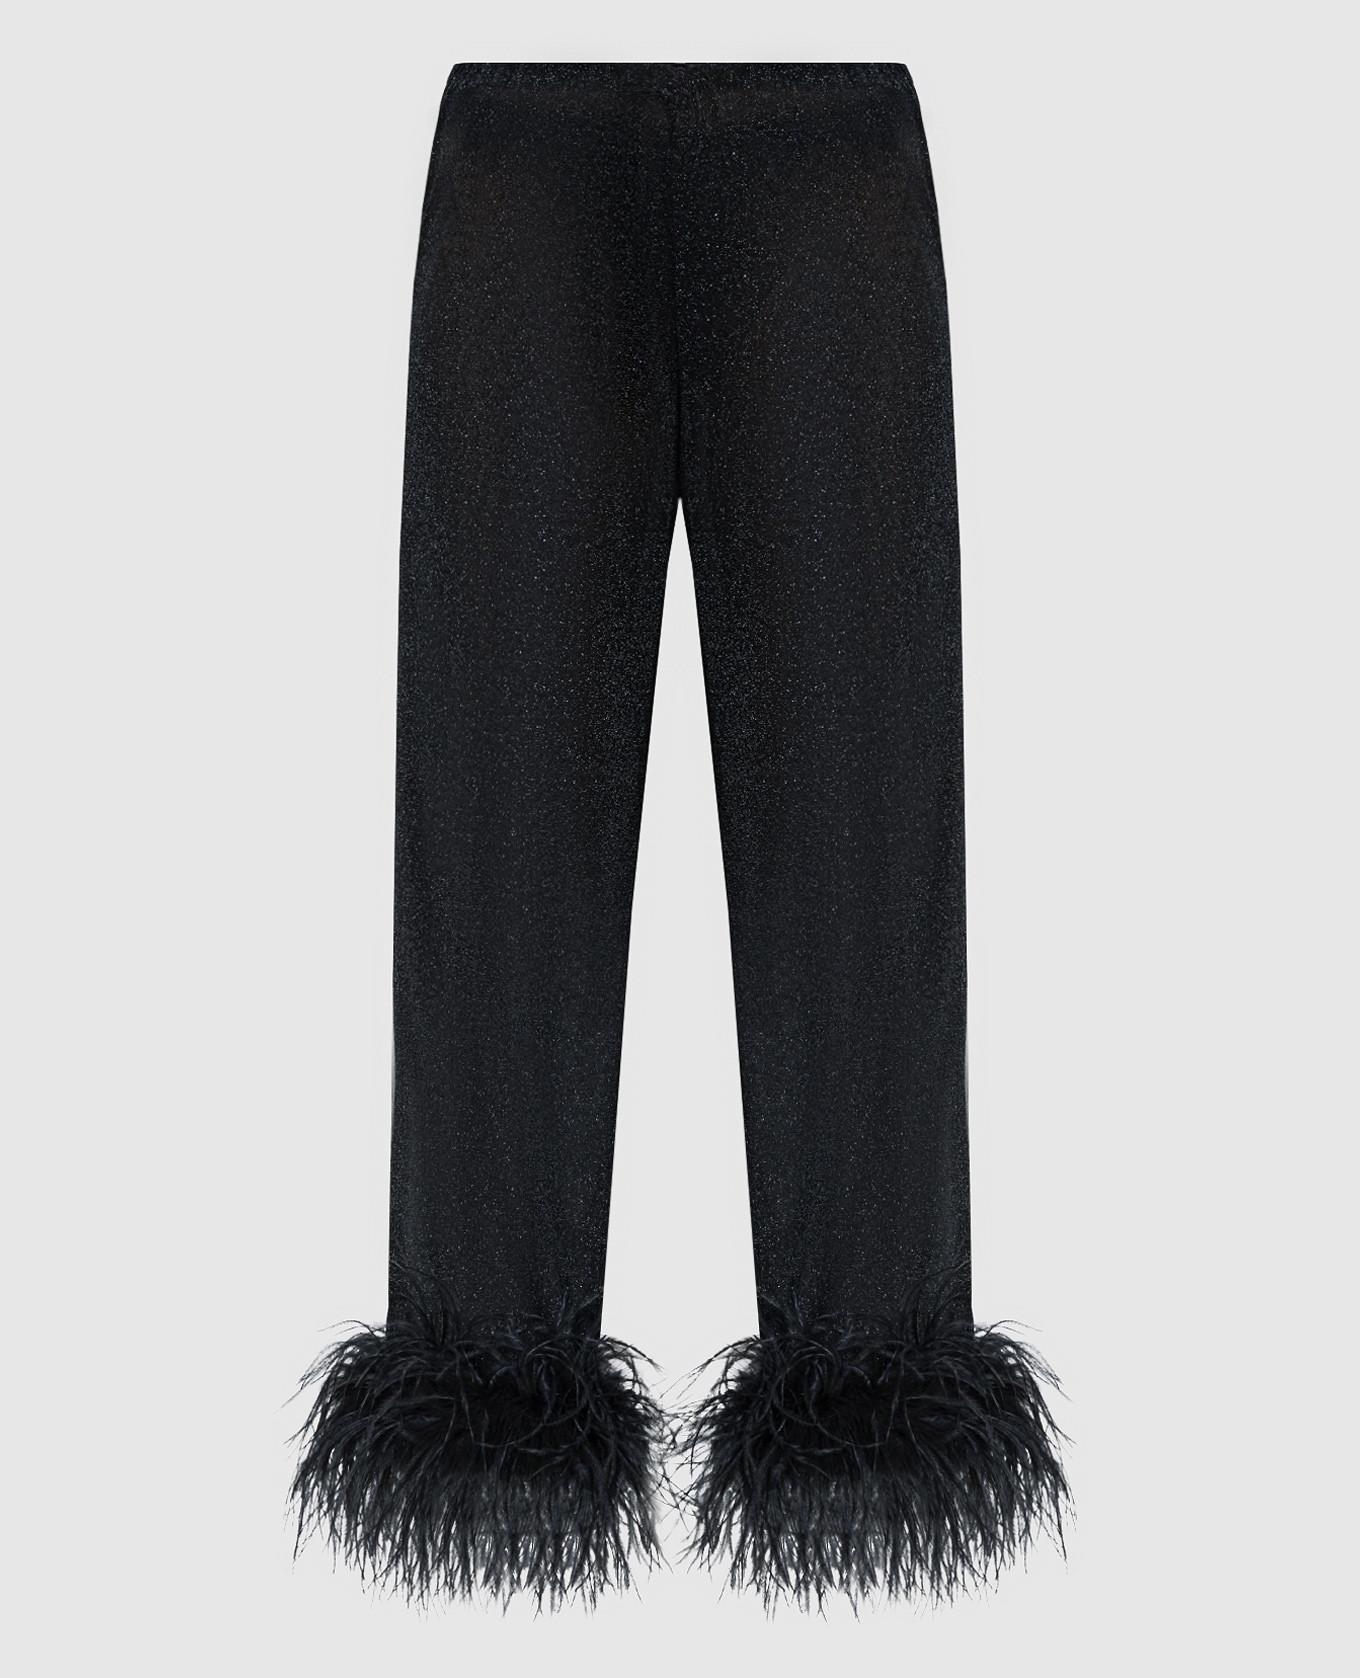 Черные брюки Lumiеre Plumage со страусиными перьями